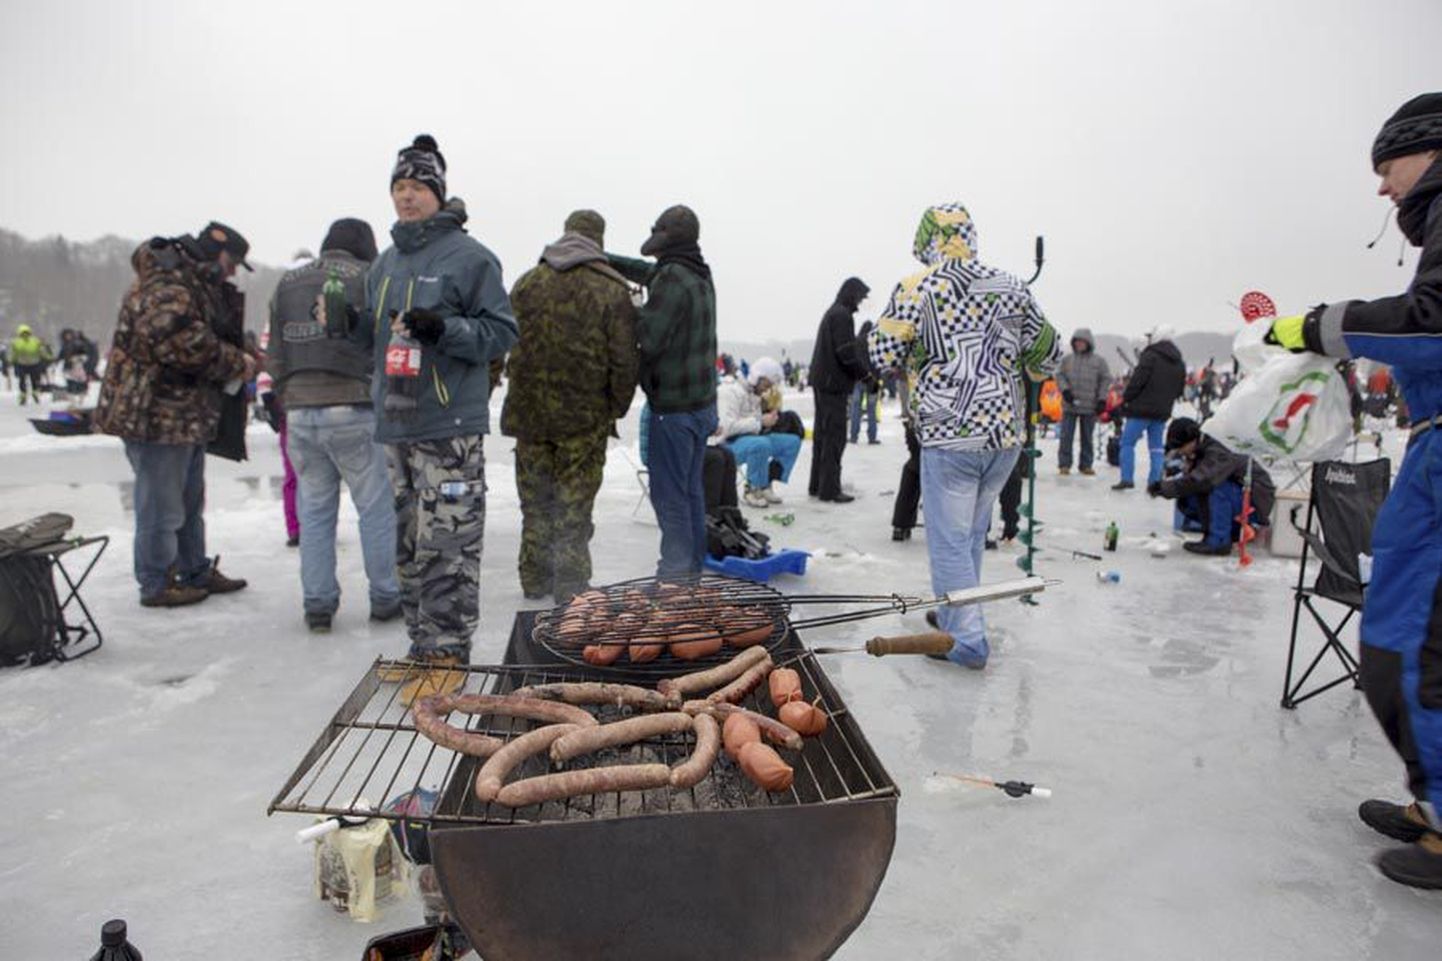 Rahvapidude ajal on grillimiskohtadega iselugu. Siis sussutatakse vorsti ja liha kas või keset talve Viljandi järvel, nagu on näha aasta tagasi kalapeol tehtud fotolt.